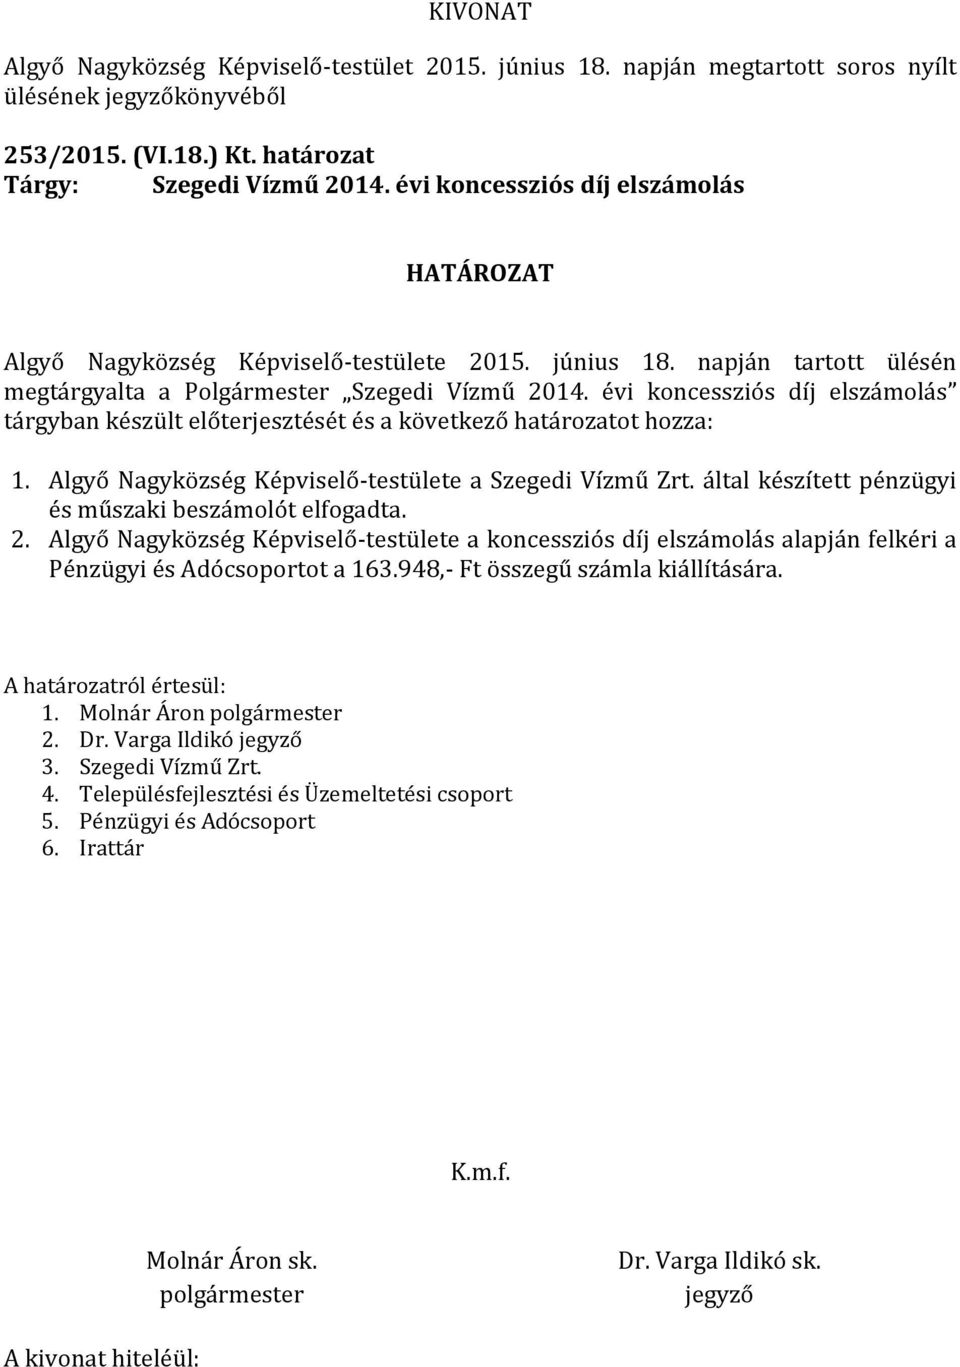 Algyő Nagyközség Képviselő-testülete a Szegedi Vízmű Zrt. által készített pénzügyi és műszaki beszámolót elfogadta. 2.